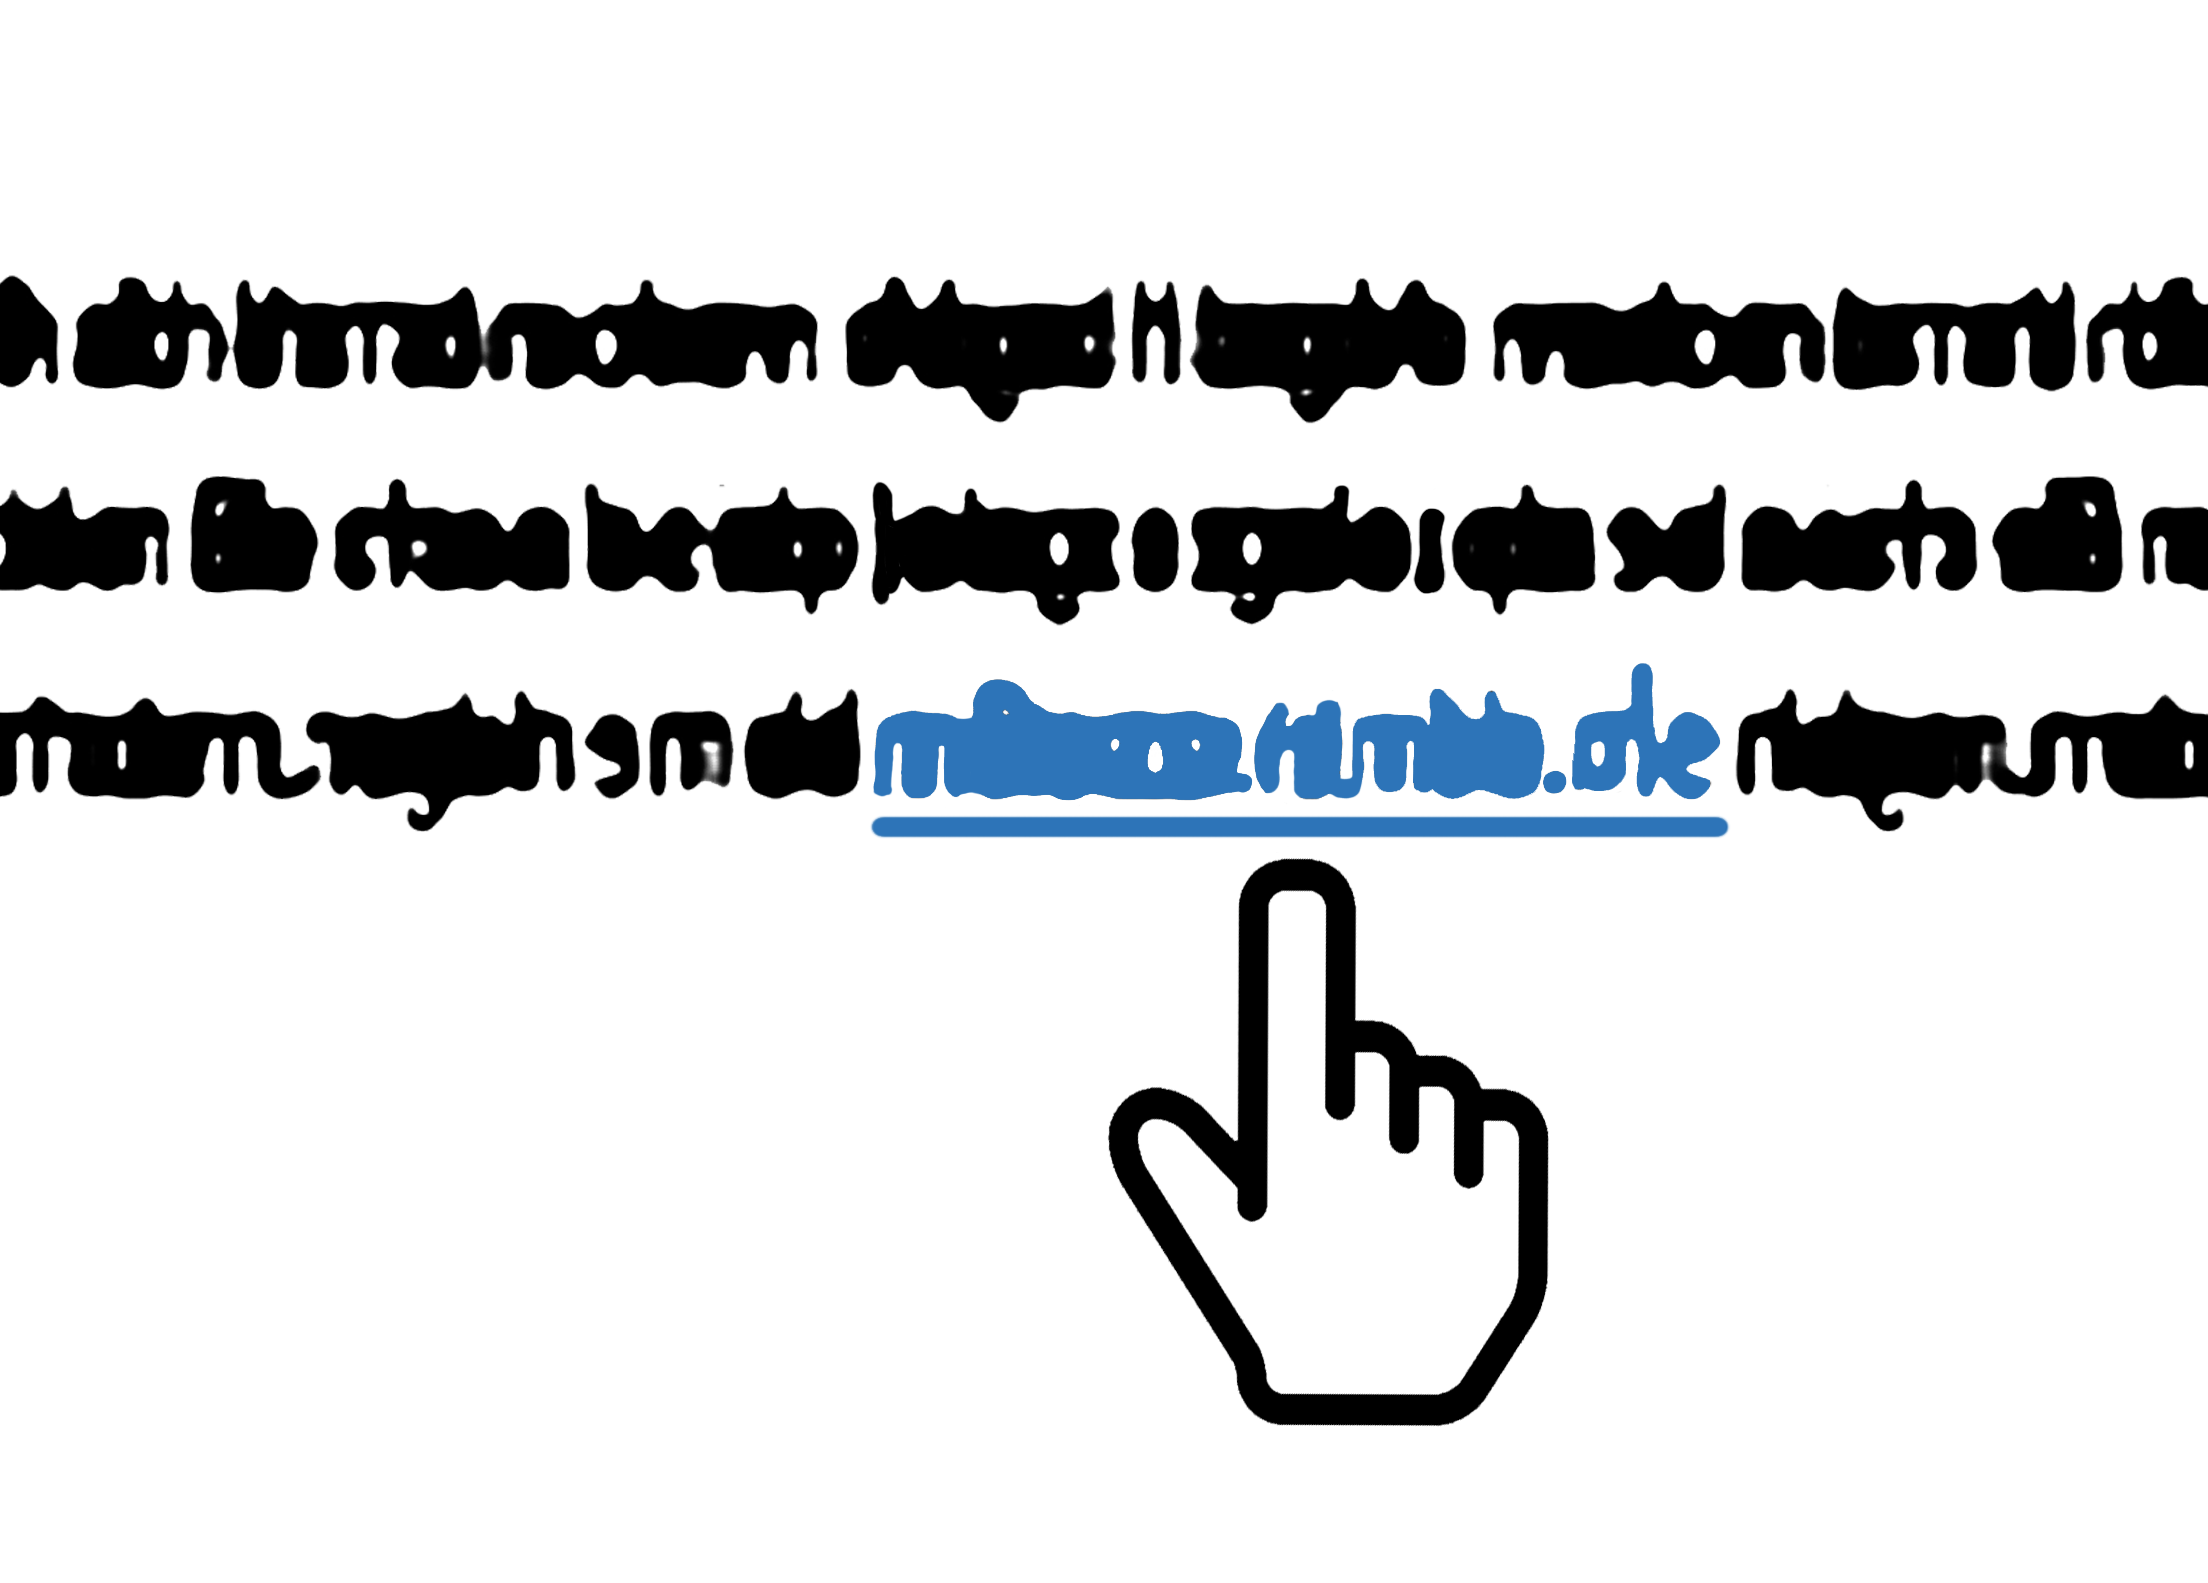 Leichte Sprache Bild: Die Computermaus in Handform hovert über einem Link